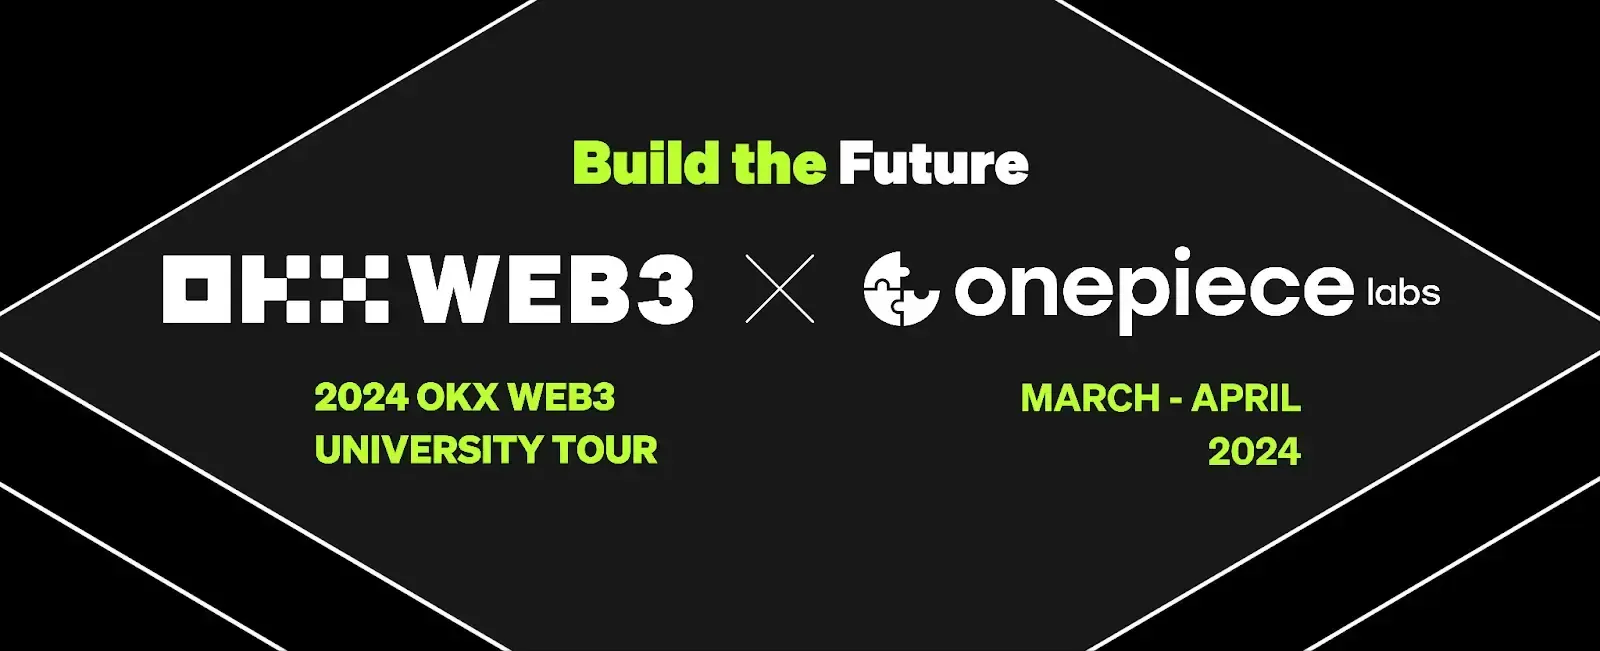 重塑未来：纵览 Web3 行业全景 - 回顾OnePiece Labs 高校行活动